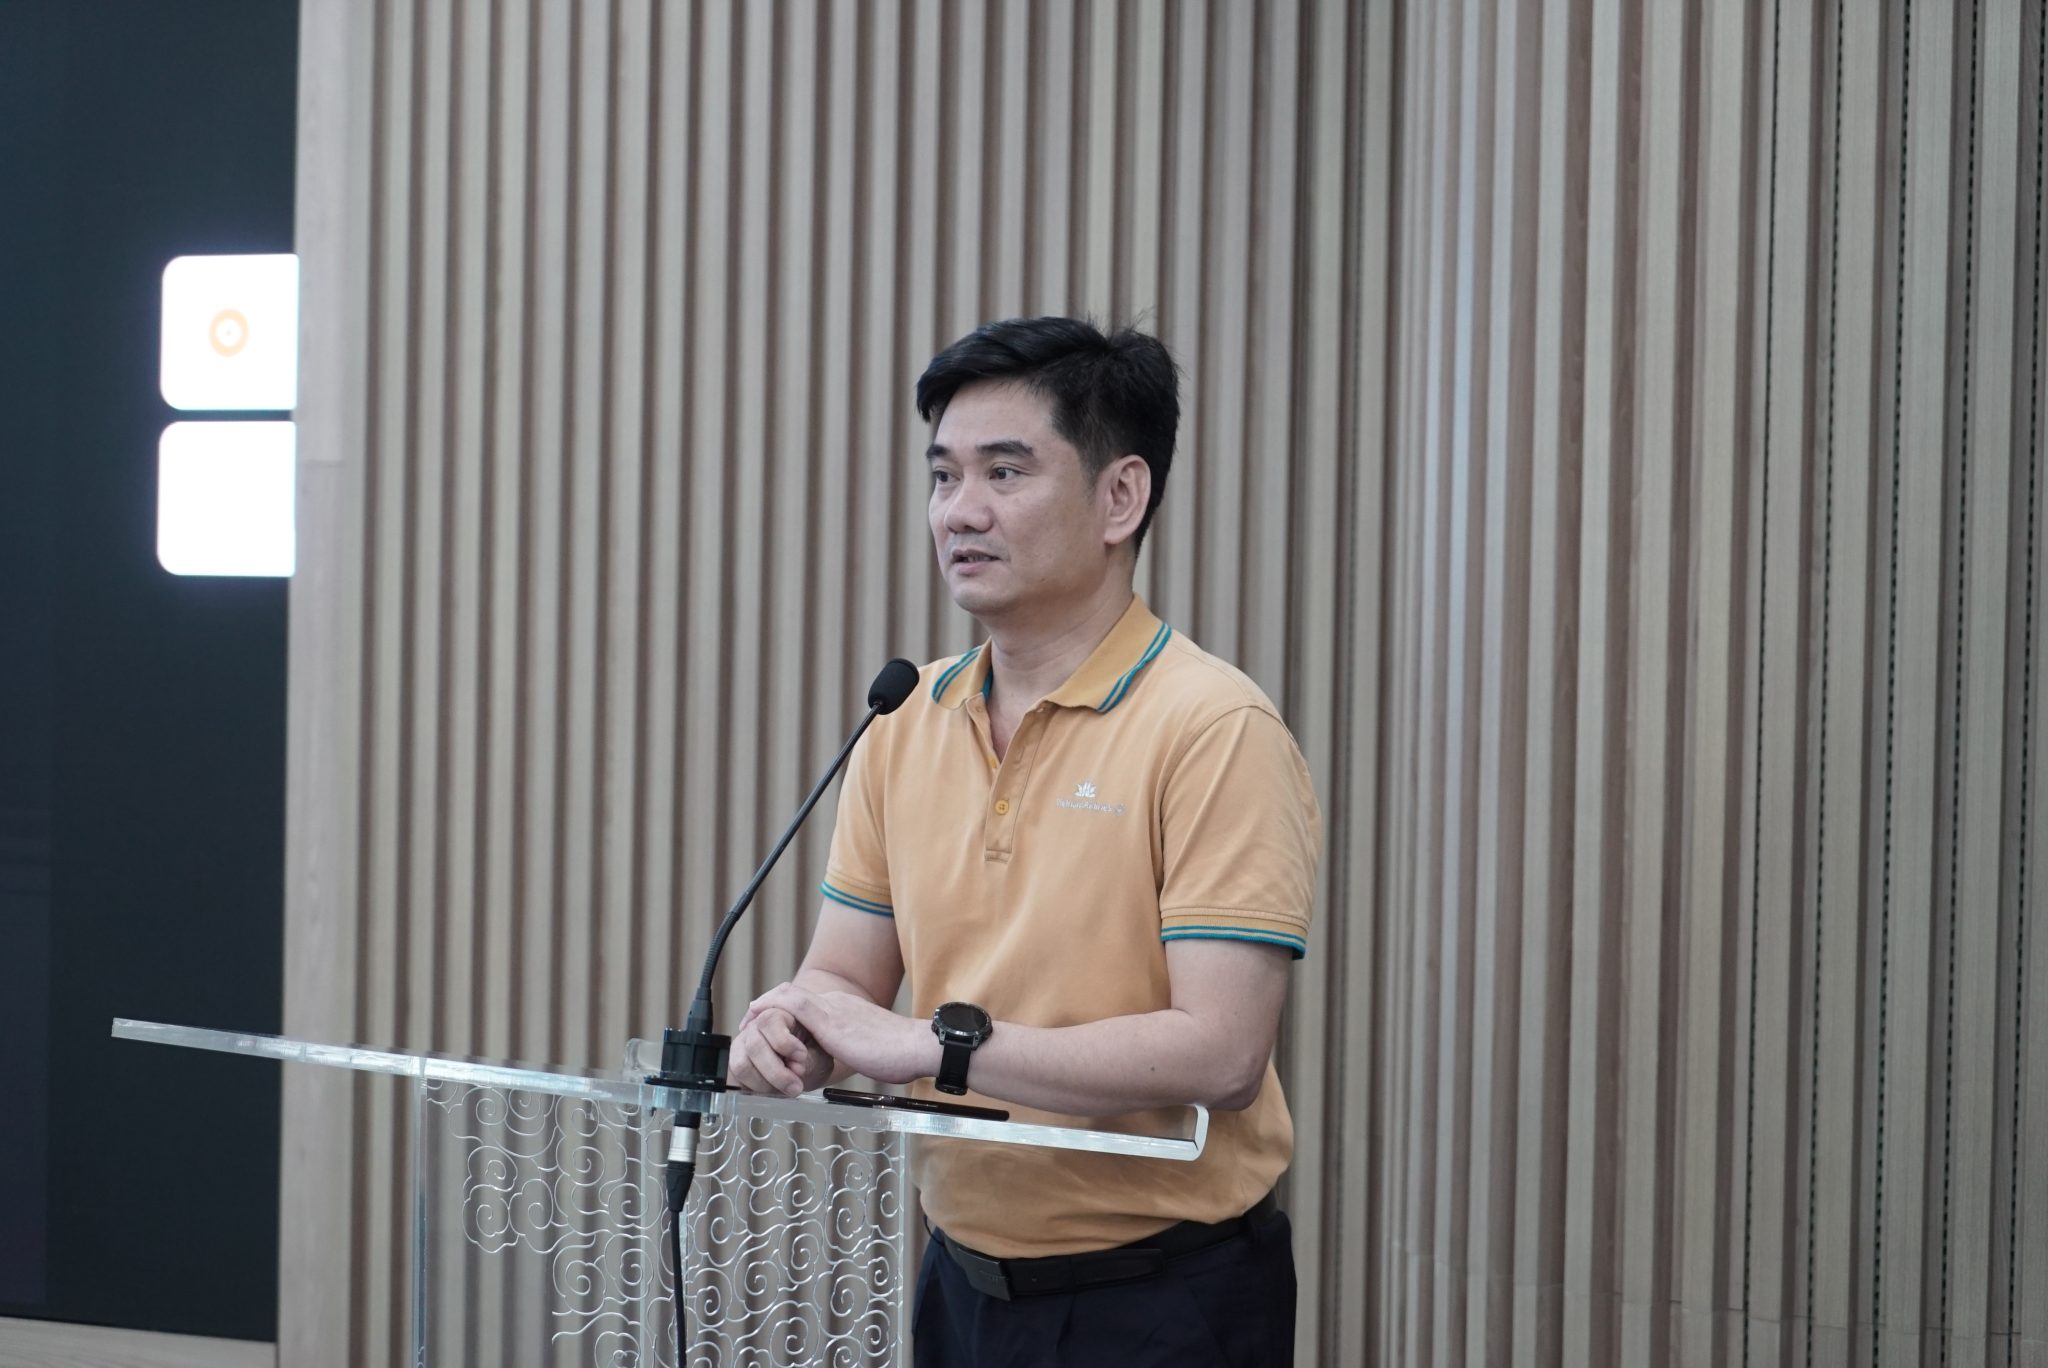 PGĐ Trung tâm CĐS Hoàng Ngọc Chí phát biểu tại lớp đào tạo SkyOffice cho CBNV. (Ảnh: Thế Sơn)